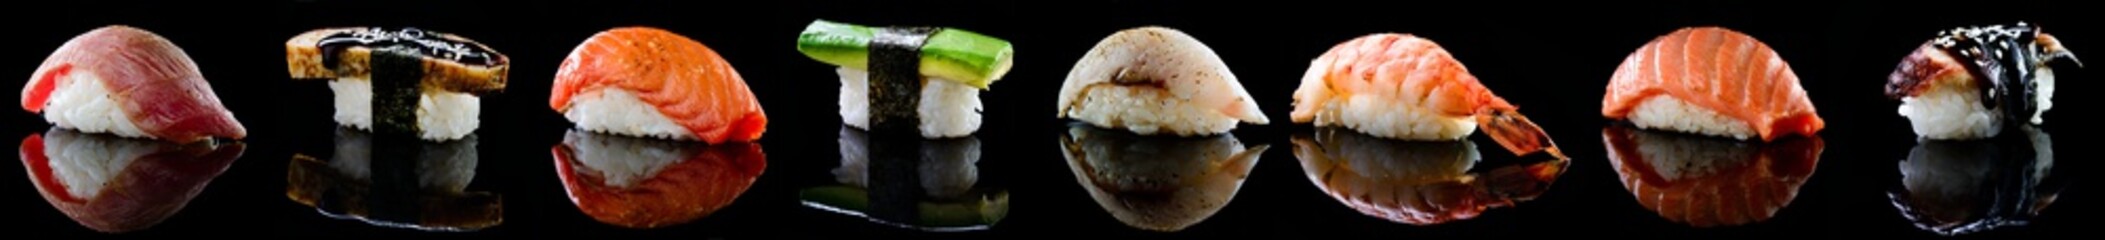 set of sushi nigiri set on black with reflection